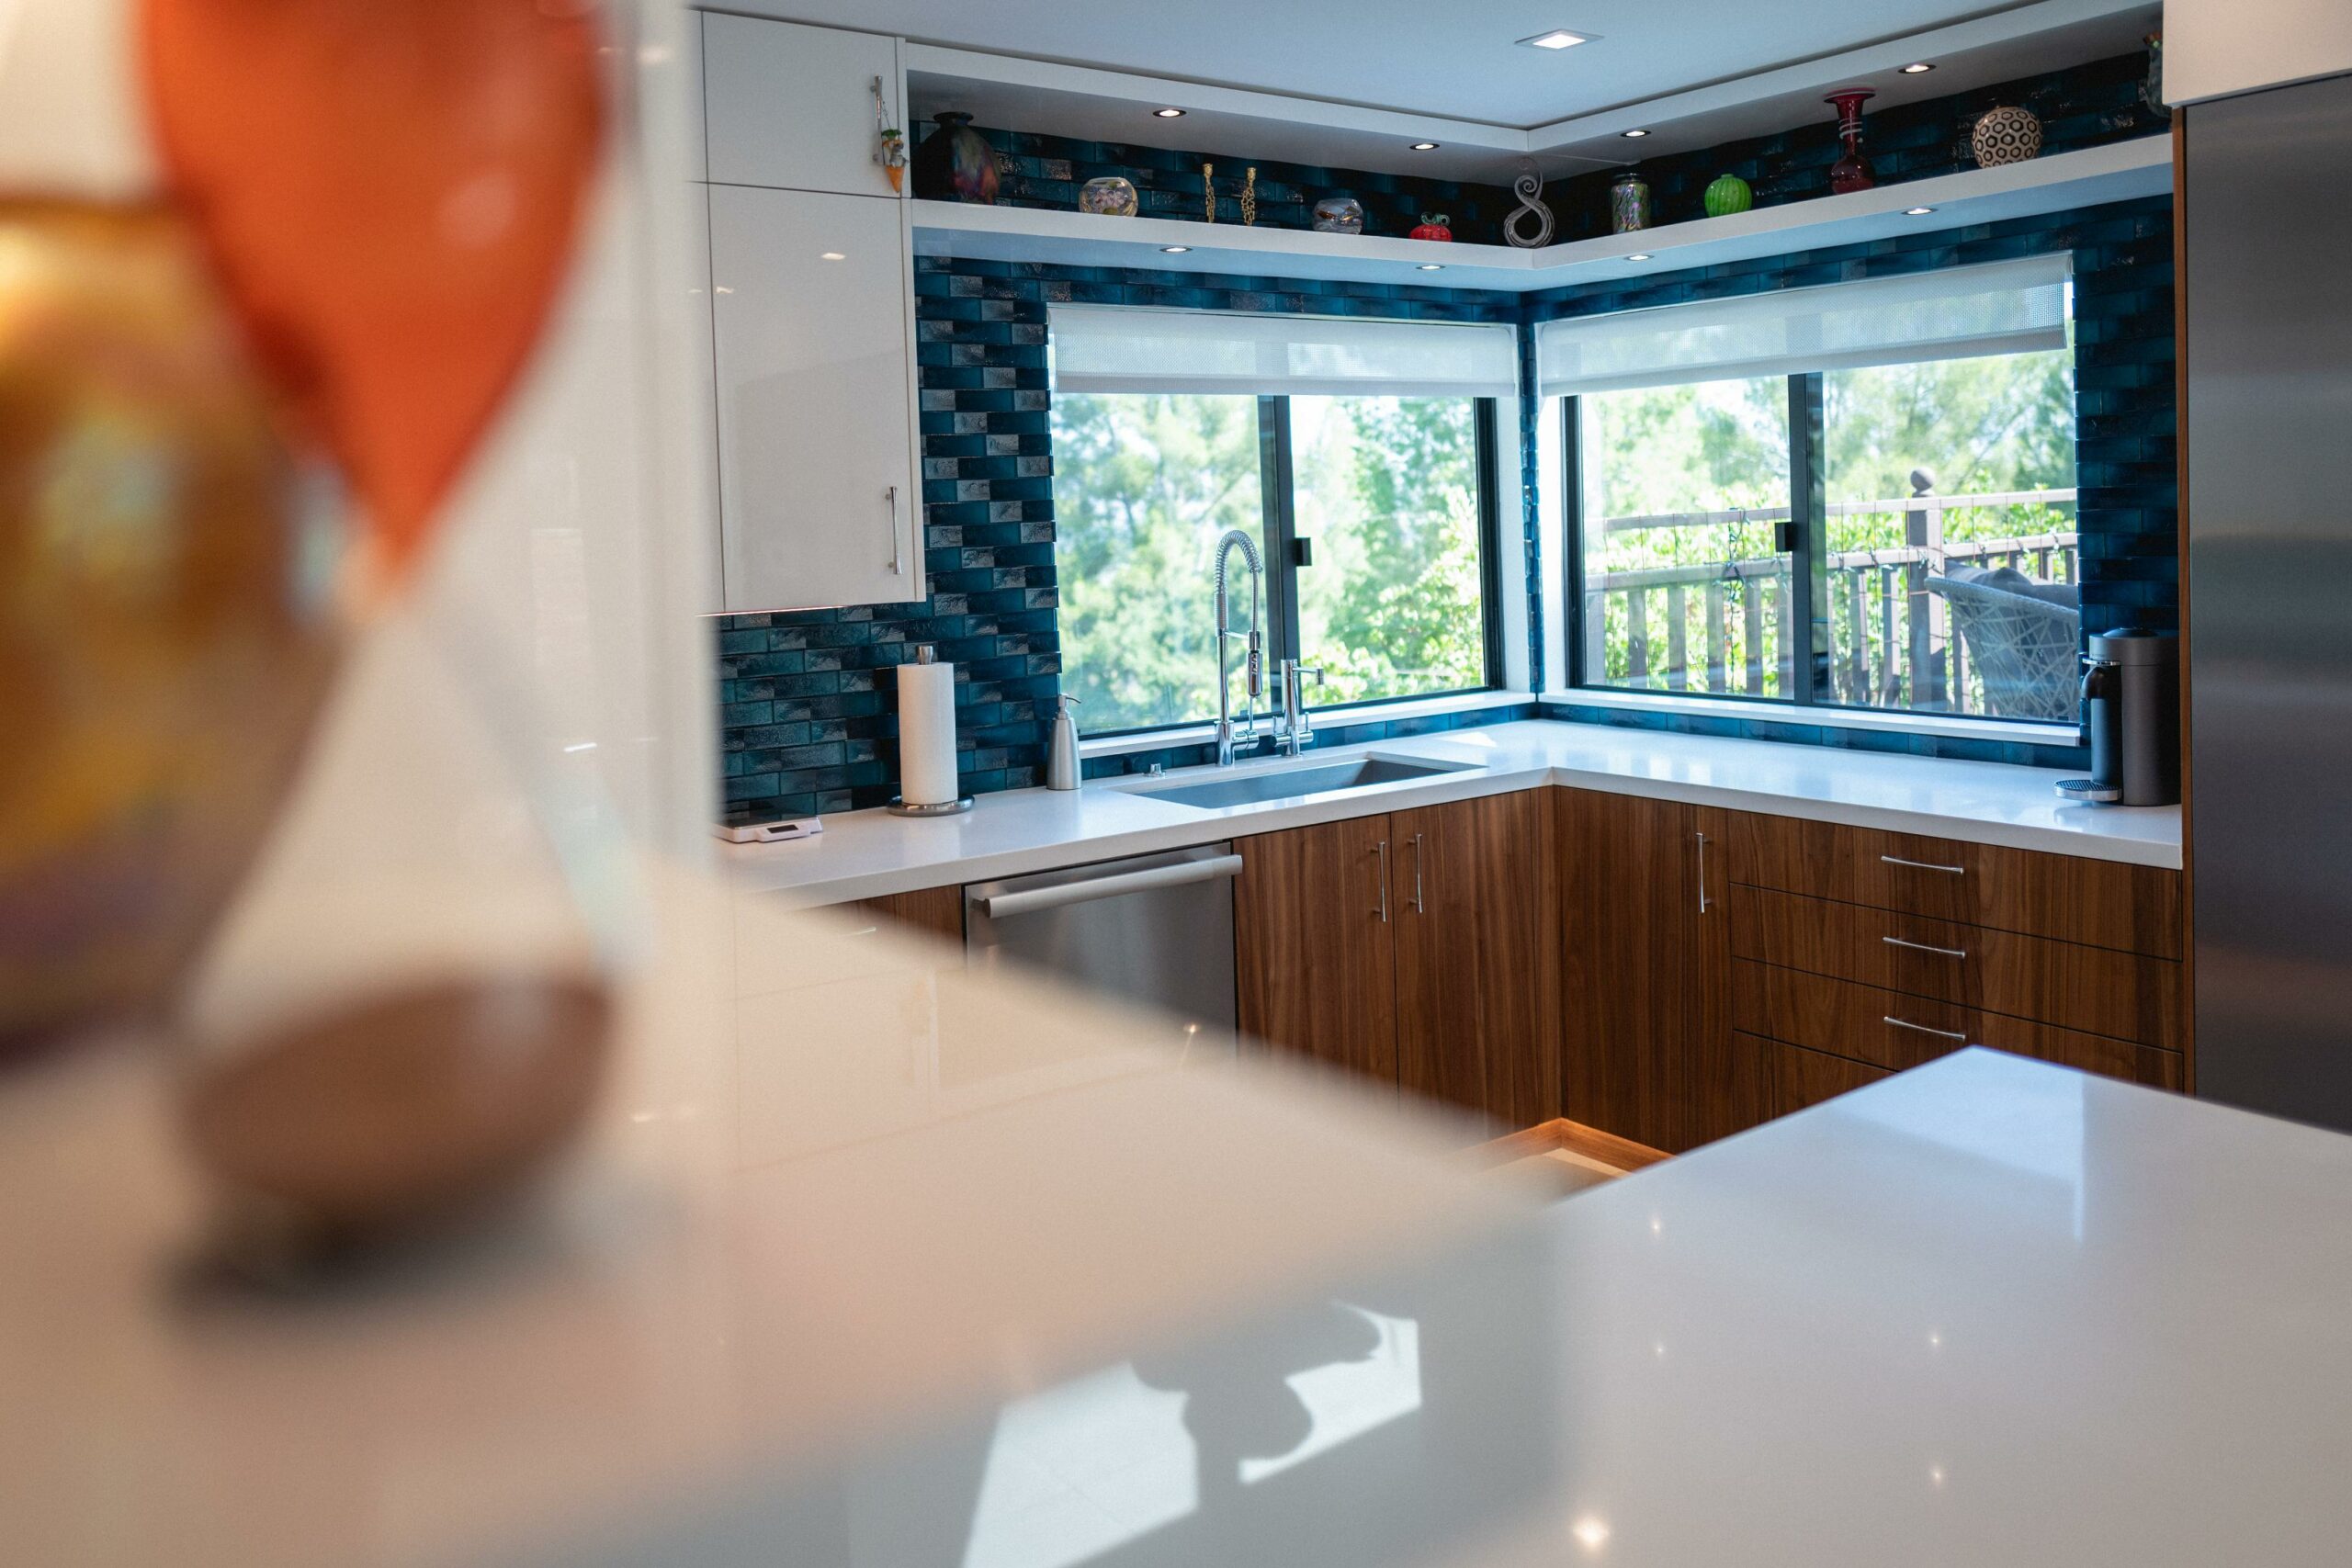 Modern kitchen with blue tile backsplash and wooden cabinets.